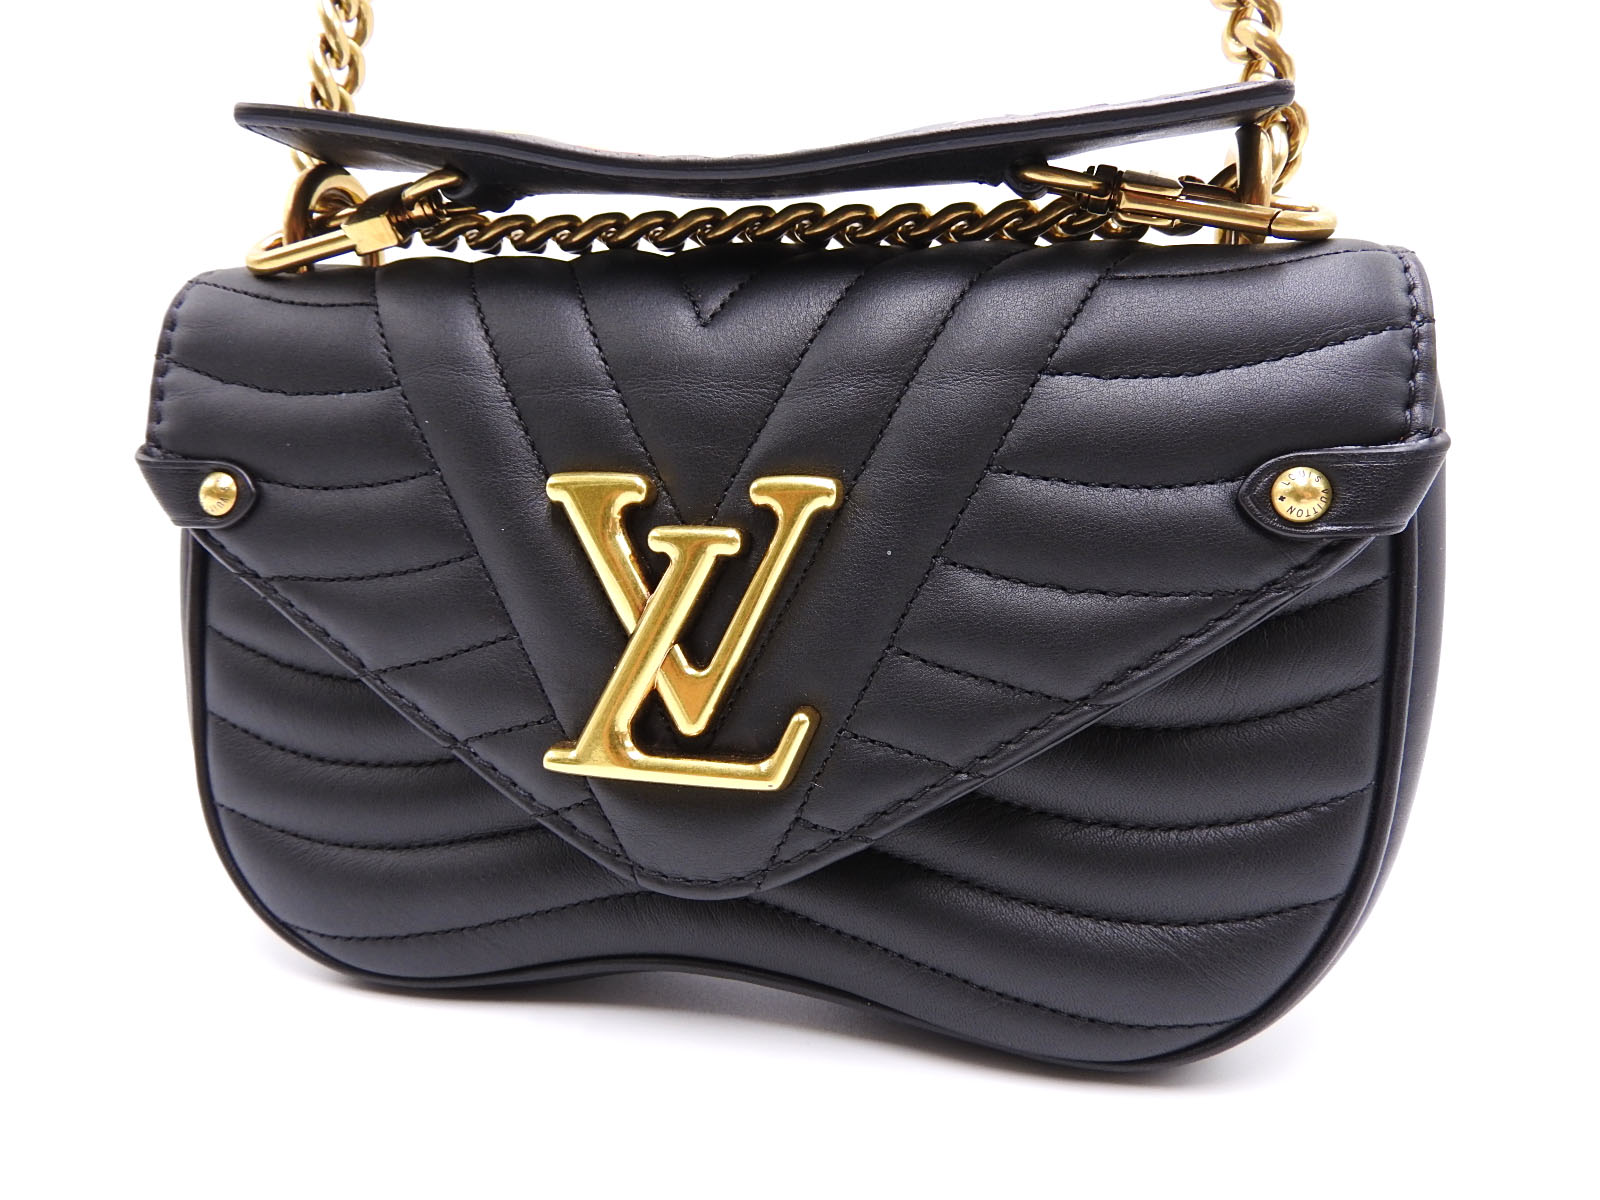 Cheap Louis Vuitton New Wave Chain Bag PM M20687 ] -   Louis+Vuitton+New+Wave+Chain+Bag+PM+M20687 : r/zealreplica